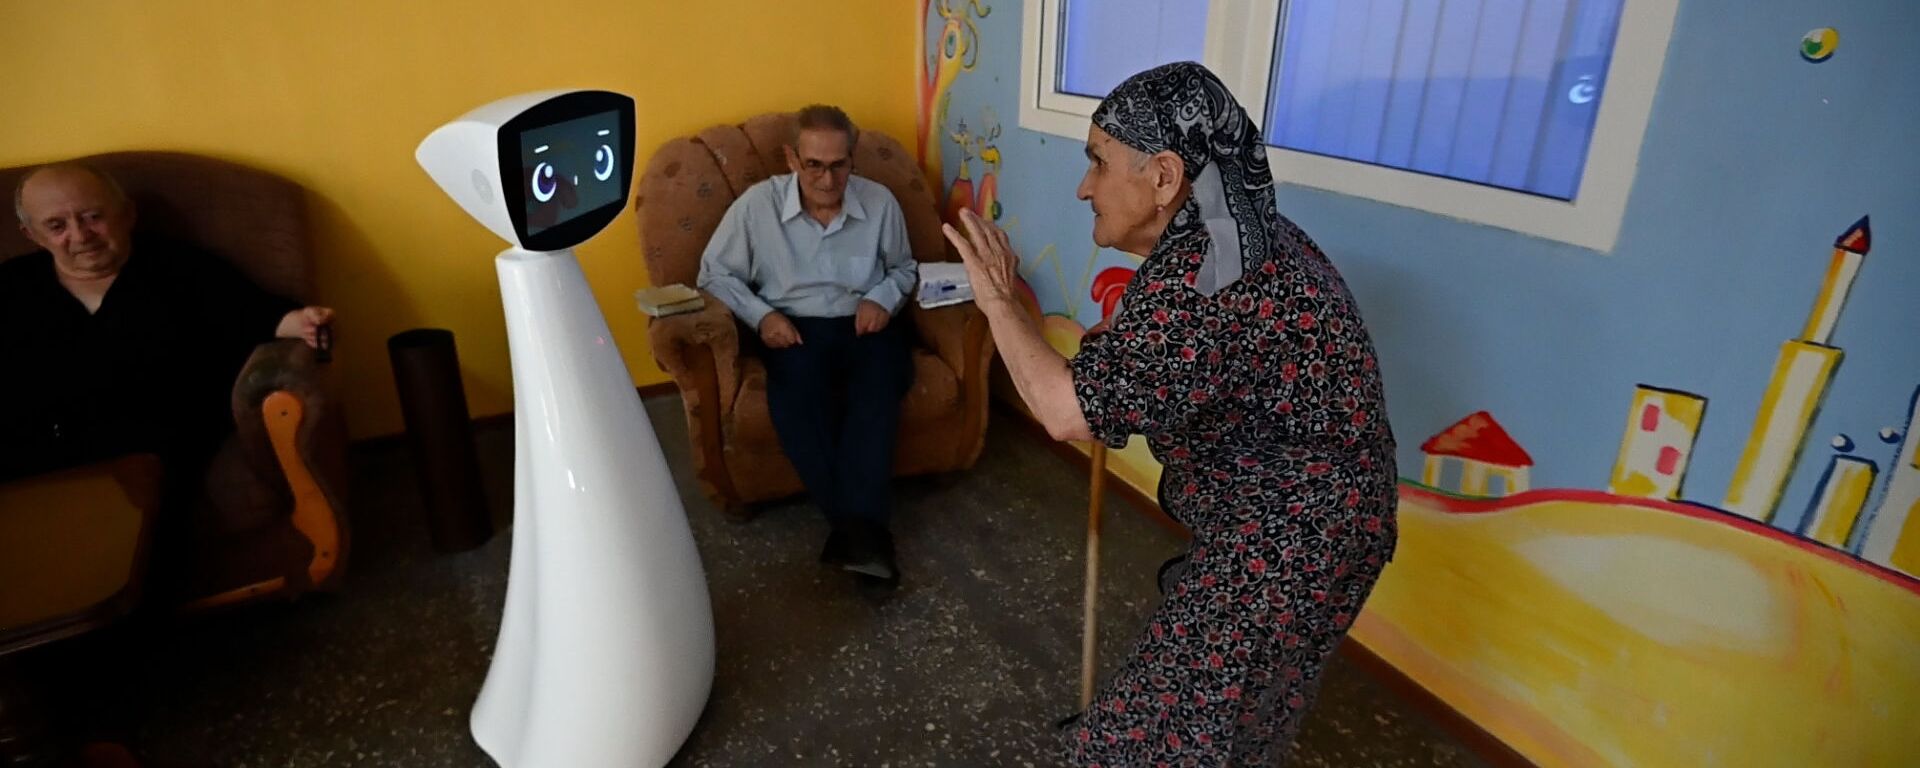 Робот по имени Робин изменил жизнь дома престарелых в Норке - Sputnik Армения, 1920, 15.08.2021